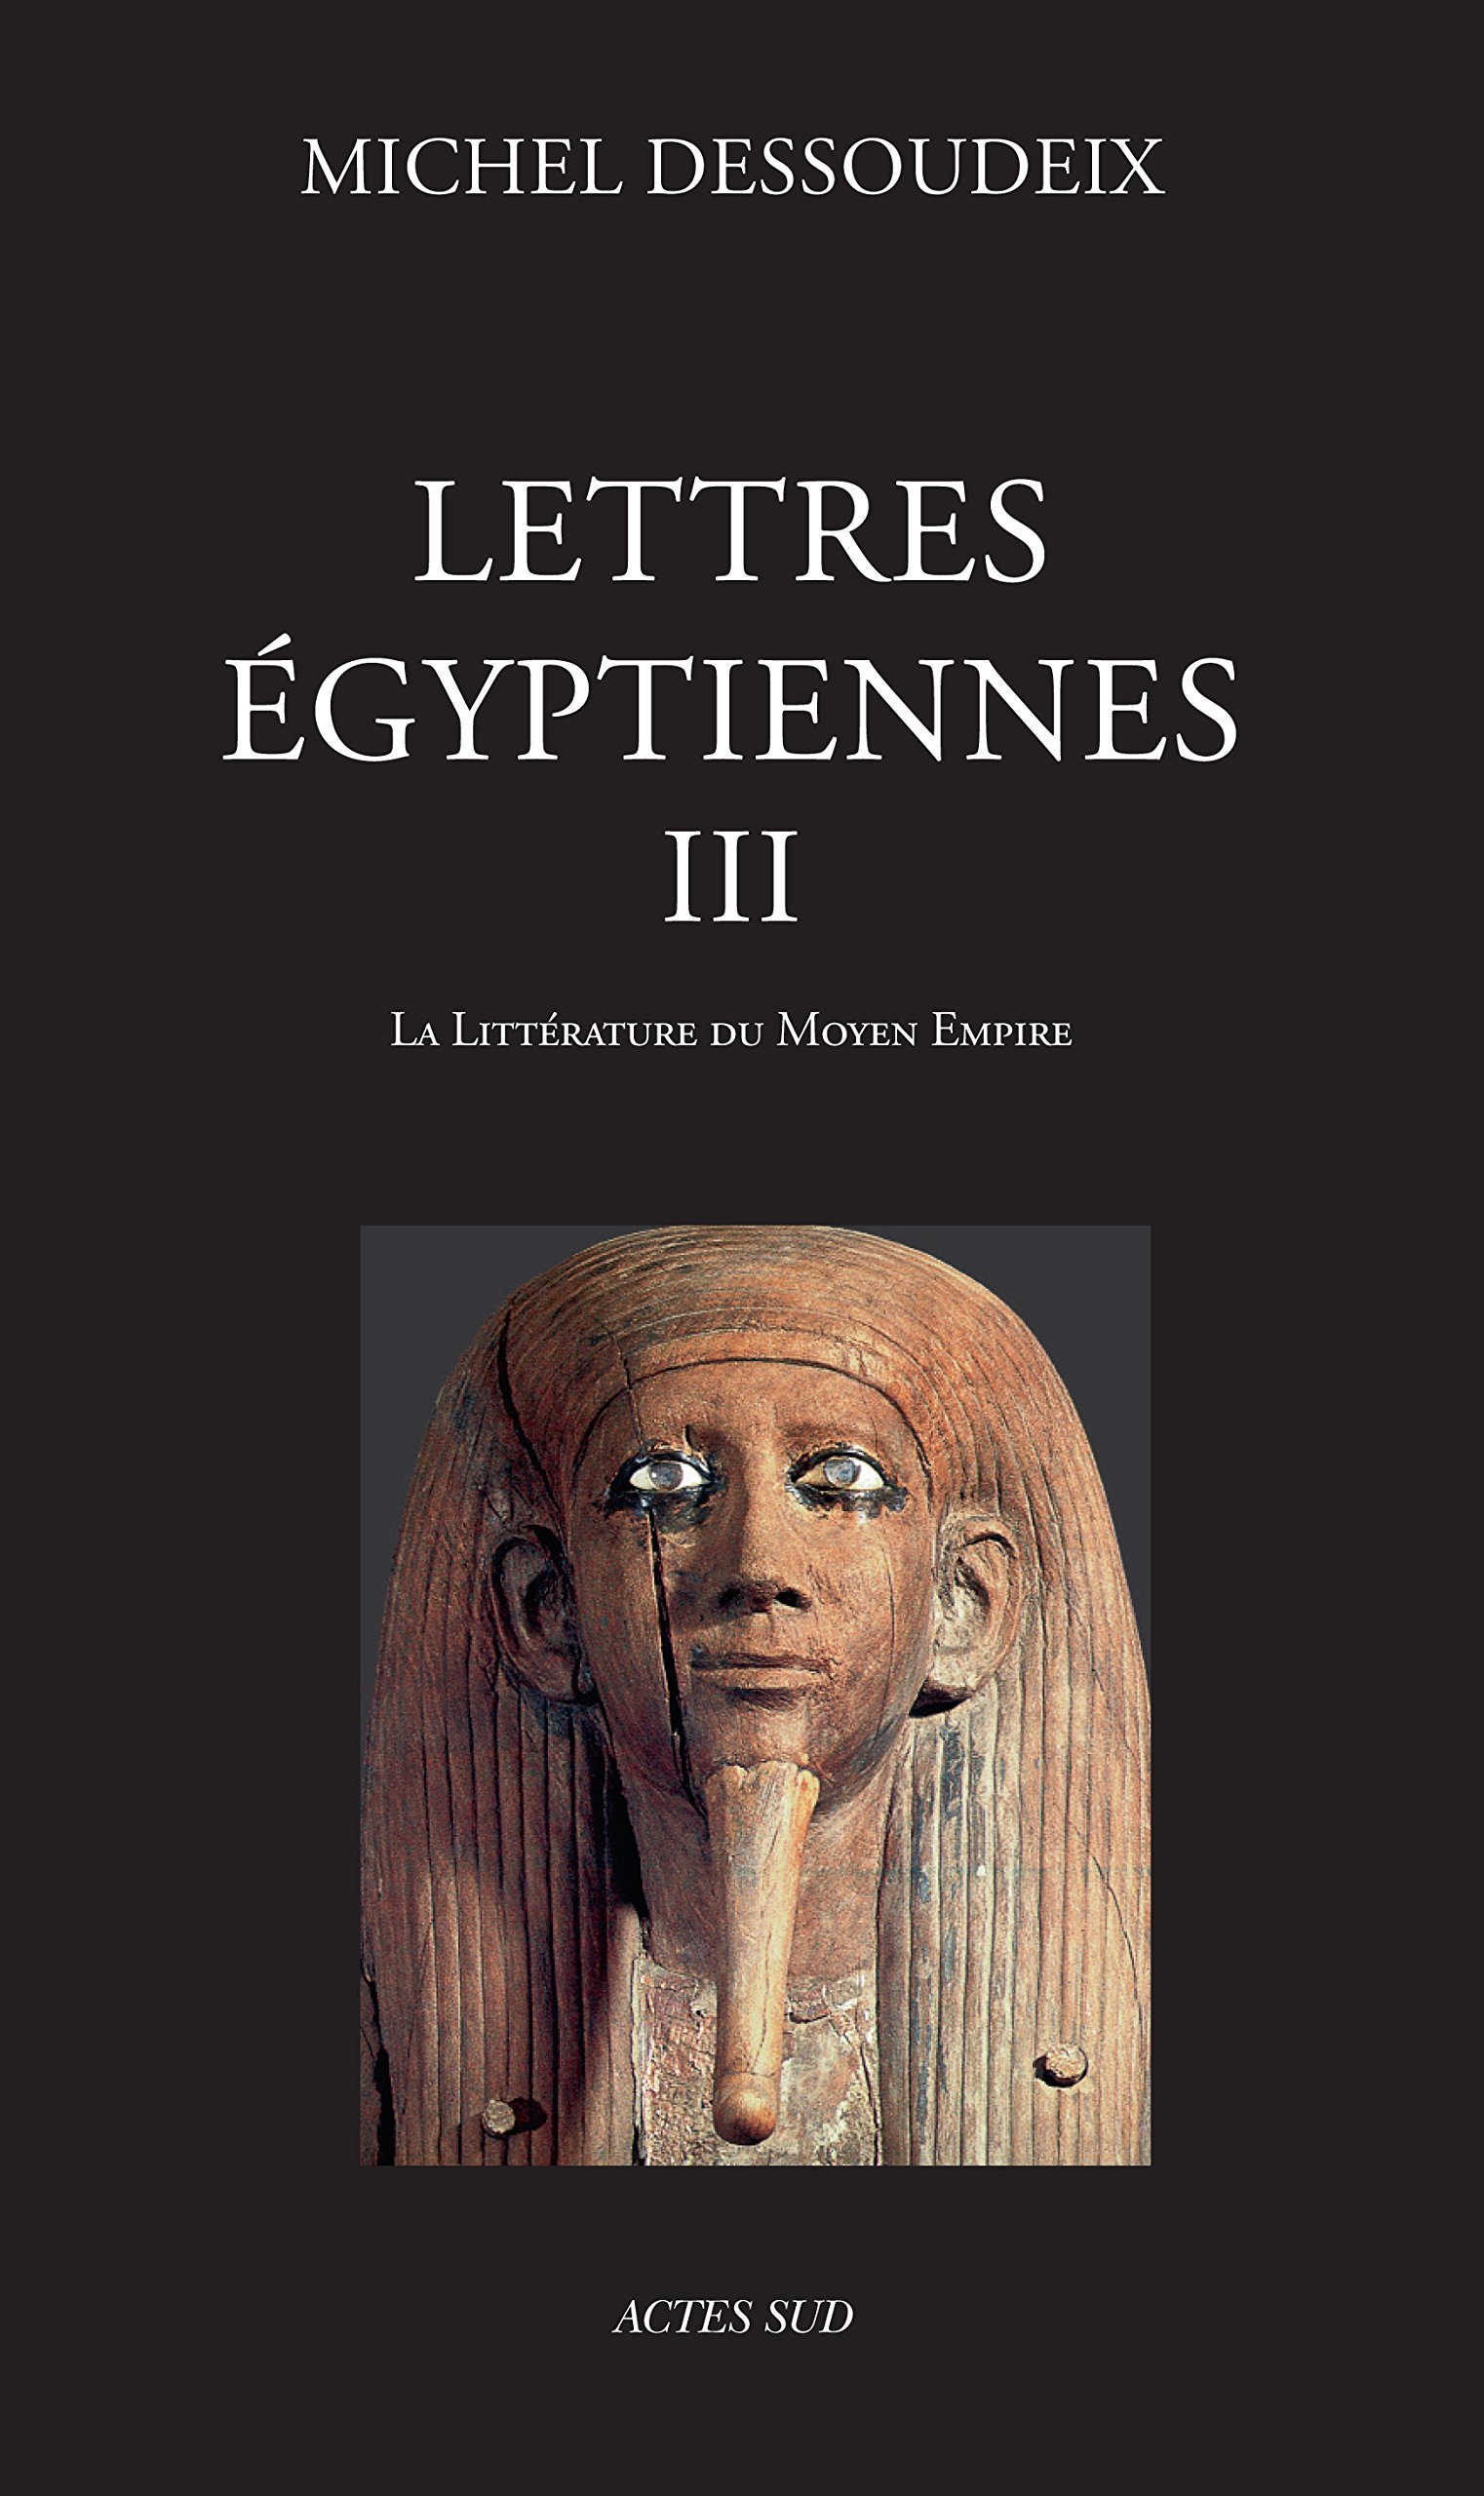 Lettres égyptiennes III. La littérature du Moyen Empire, 2016, 800 p.